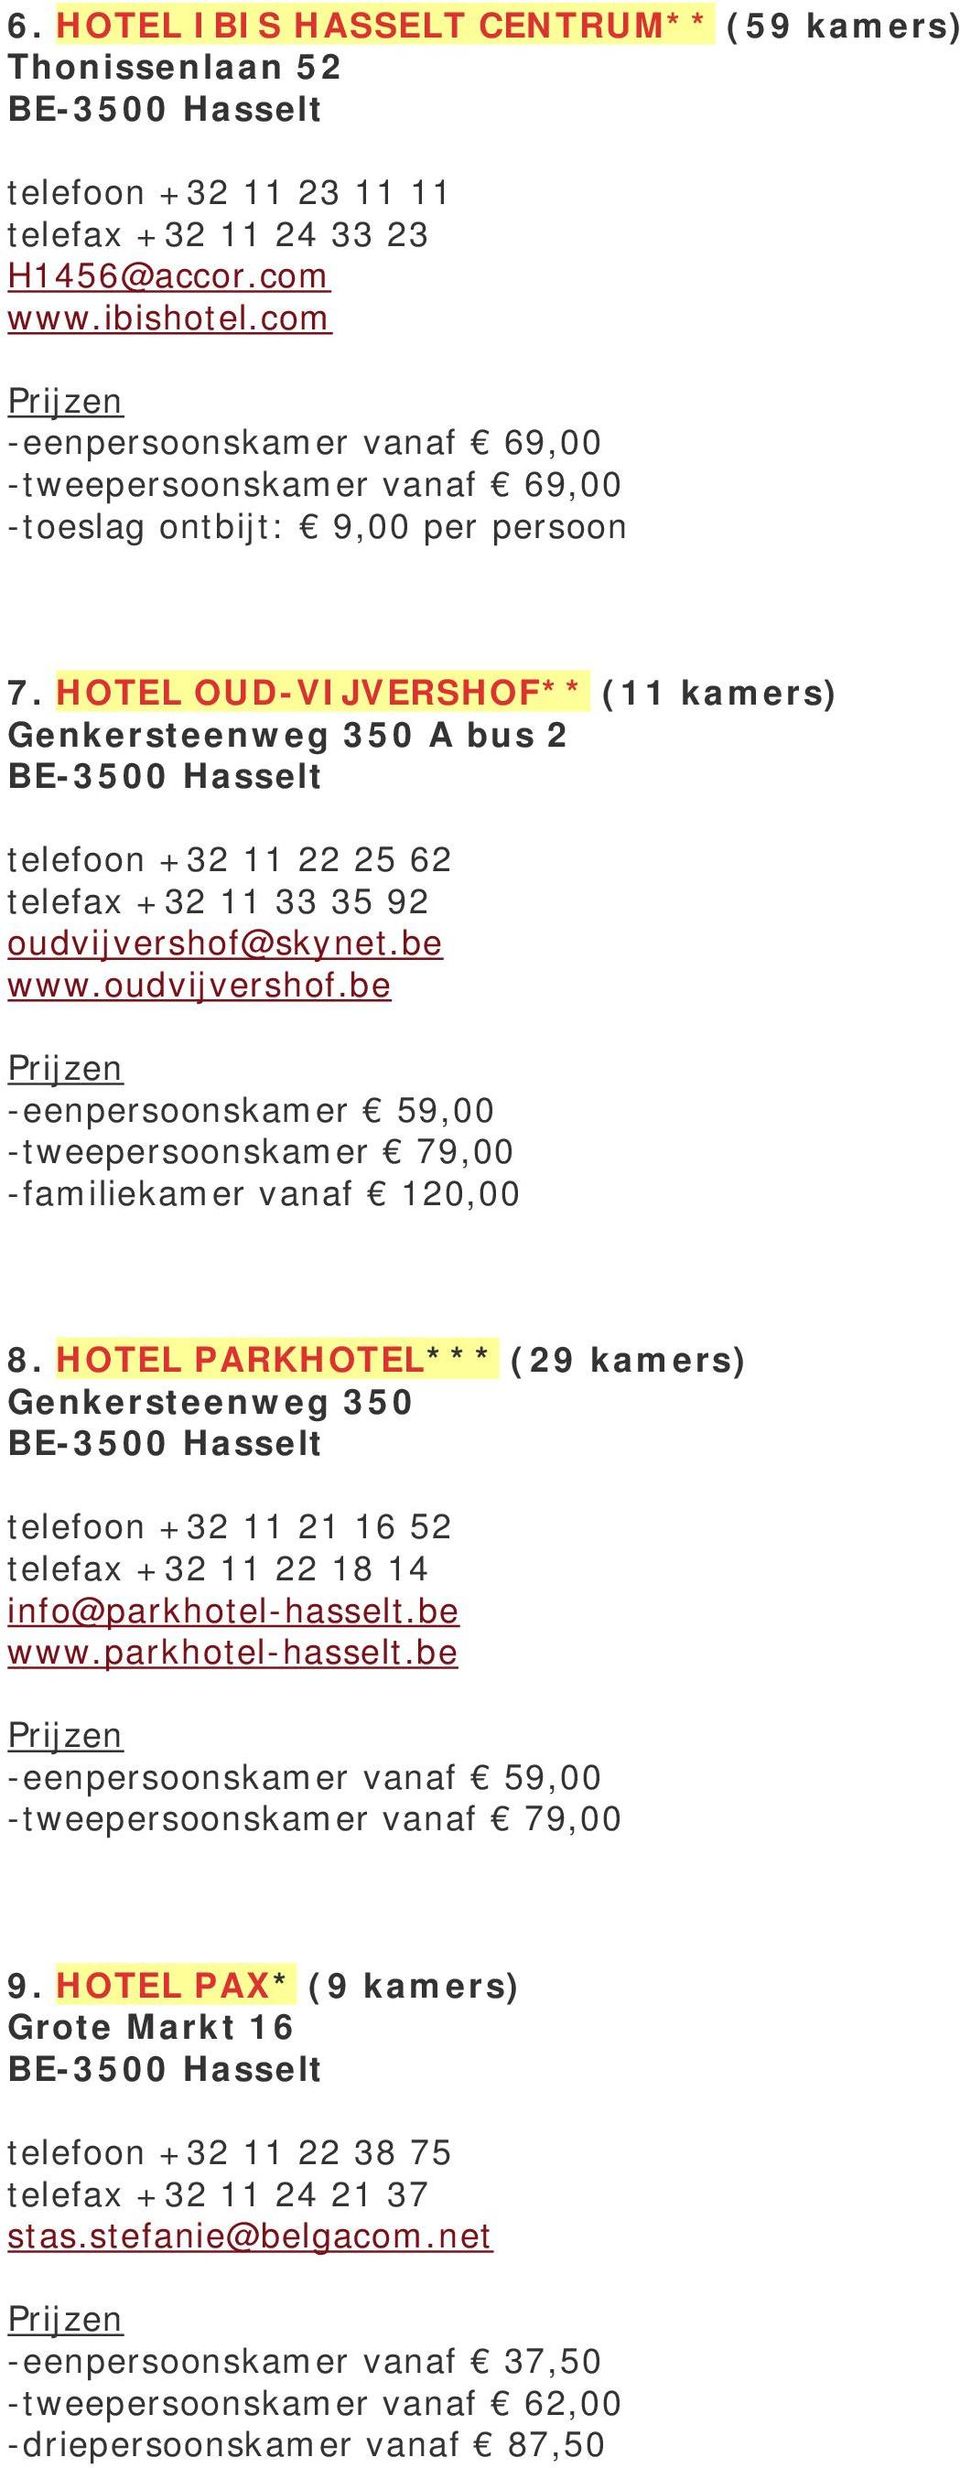 HOTEL OUD-VIJVERSHOF** (11 kamers) Genkersteenweg 350 A bus 2 telefoon +32 11 22 25 62 telefax +32 11 33 35 92 oudvijvershof@